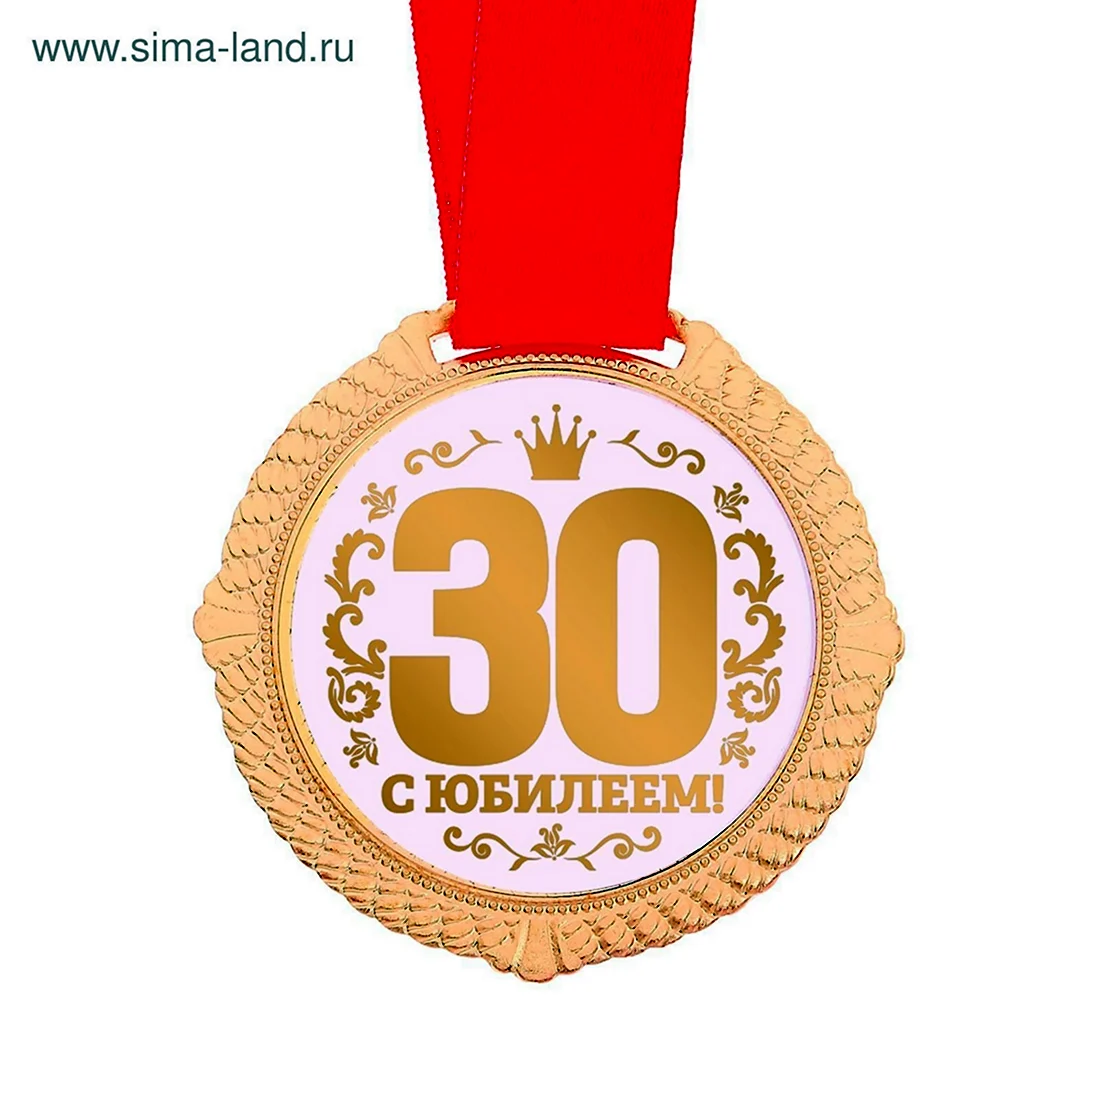 Медаль 30 лет. Открытка с днем рождения